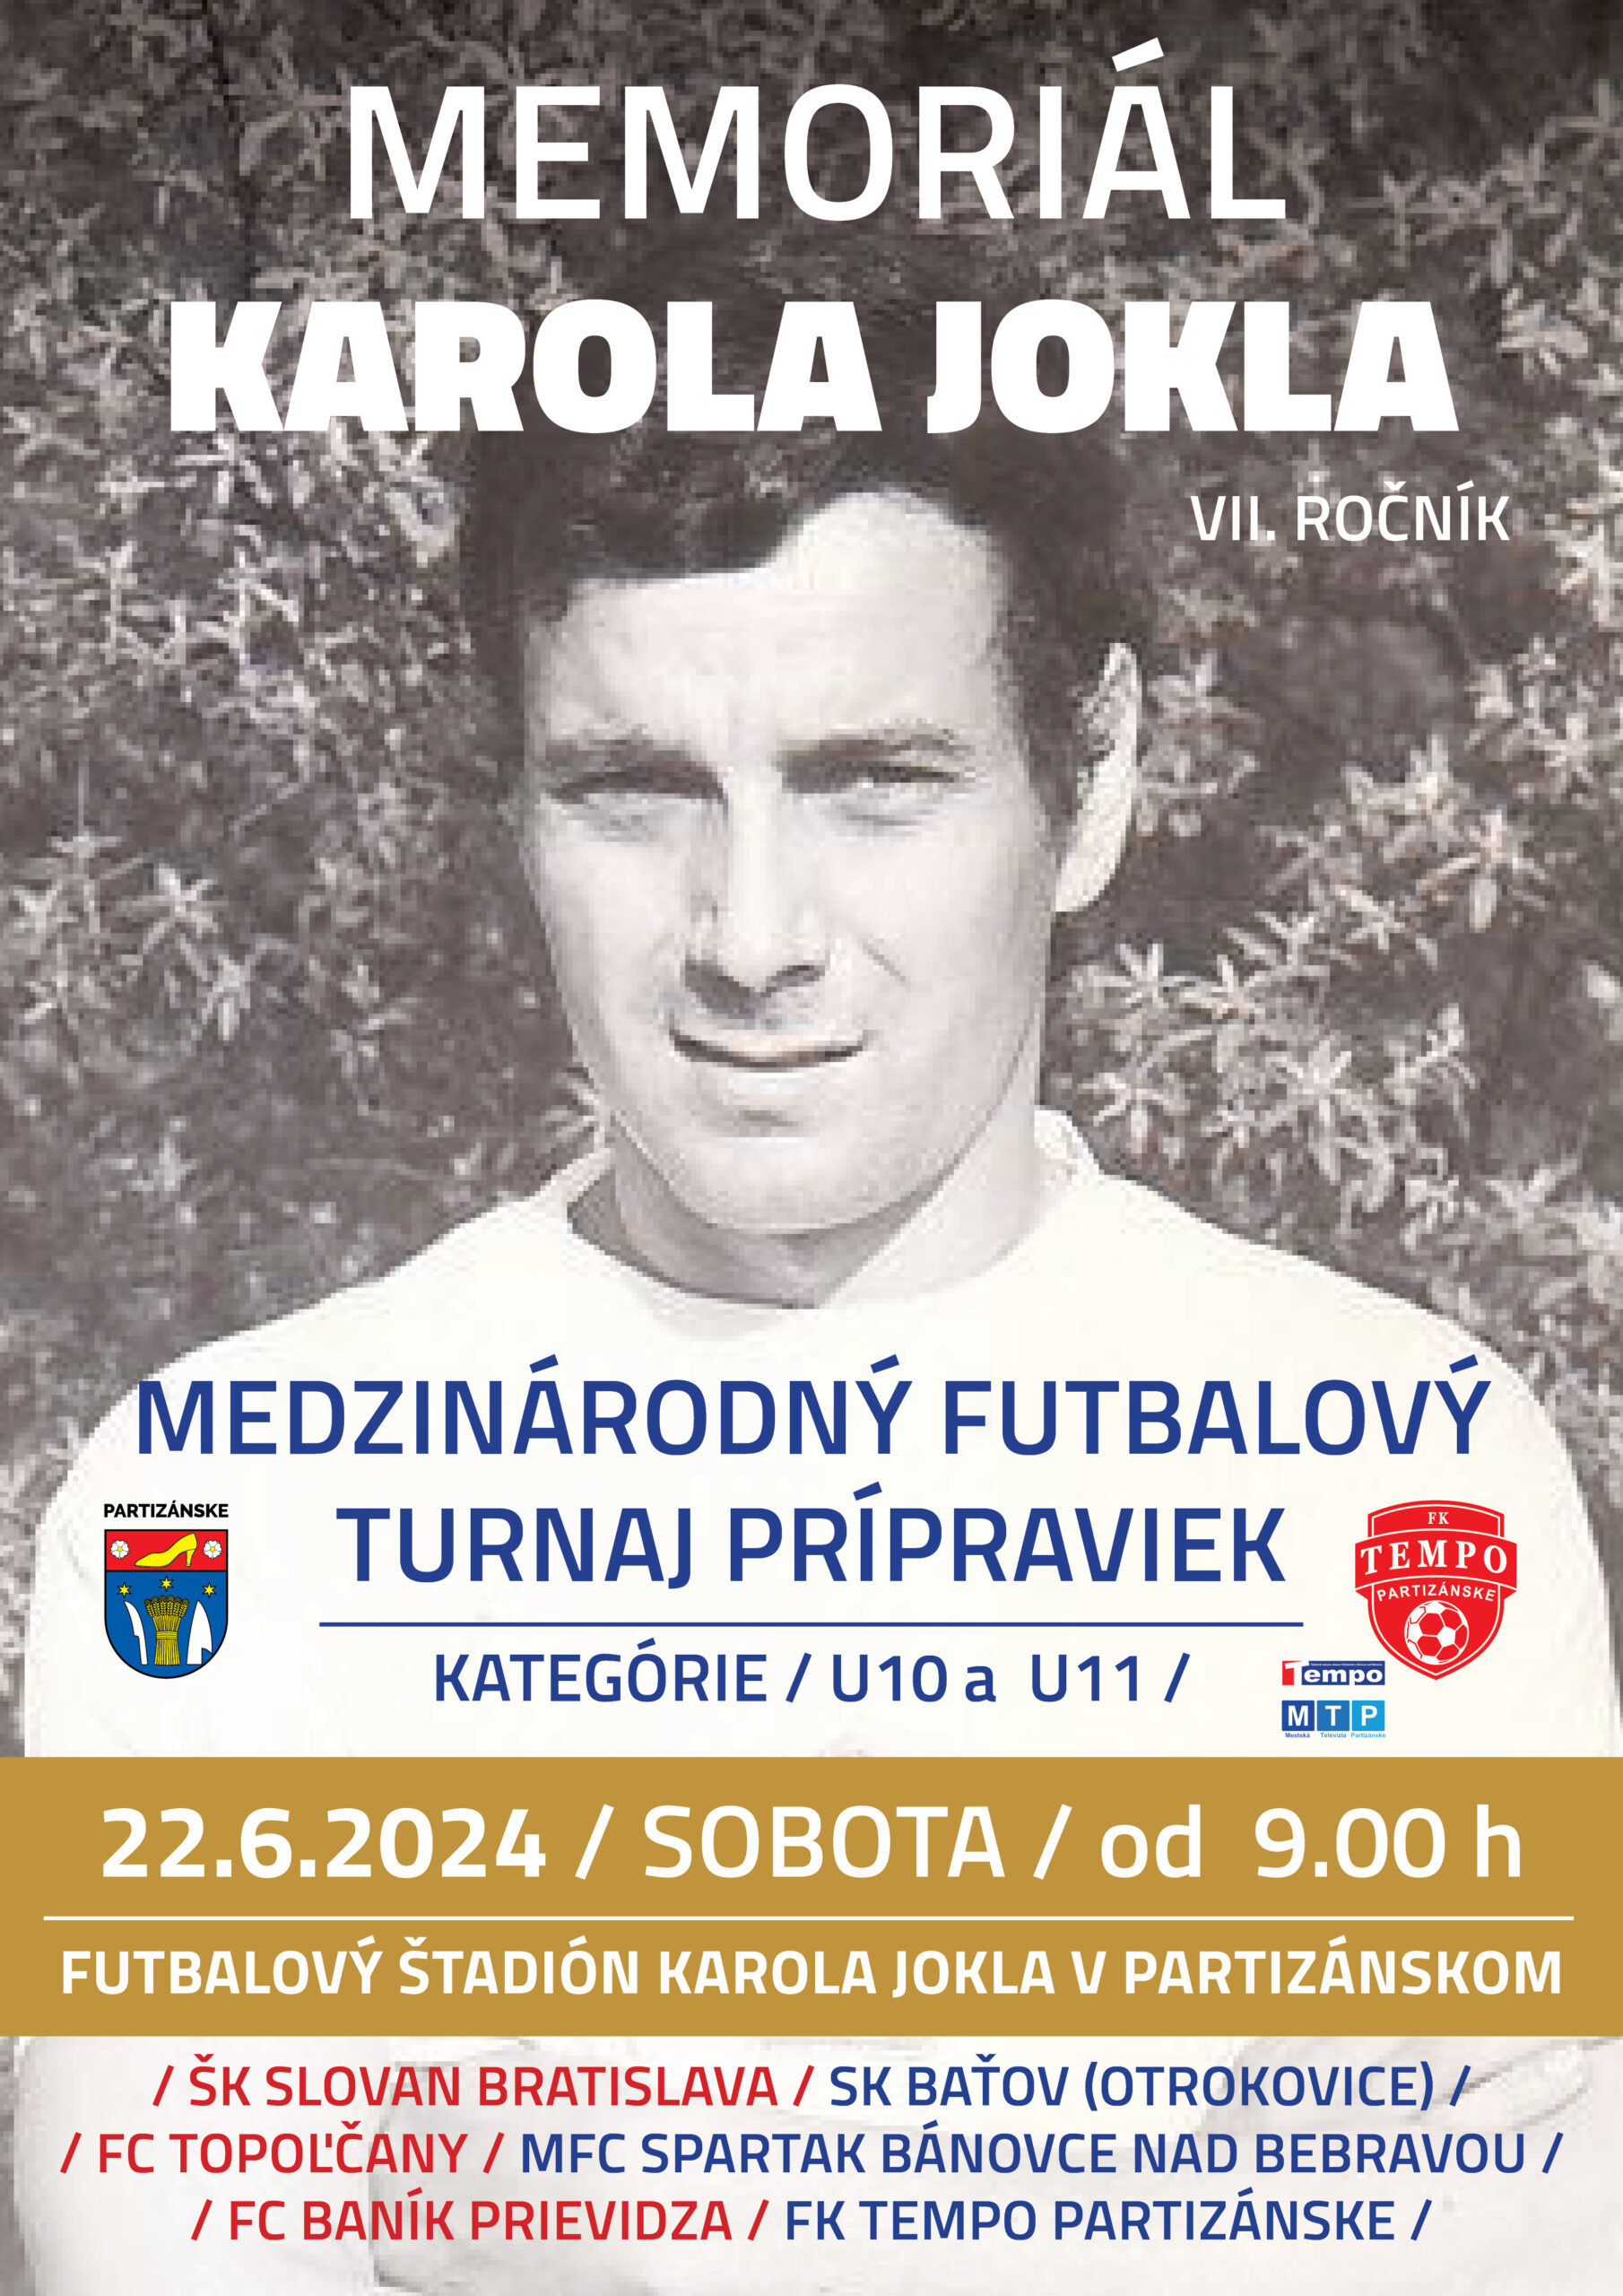 Futbla: Memoriál Karola Jokla @ futbalý štadión Karola Jokla